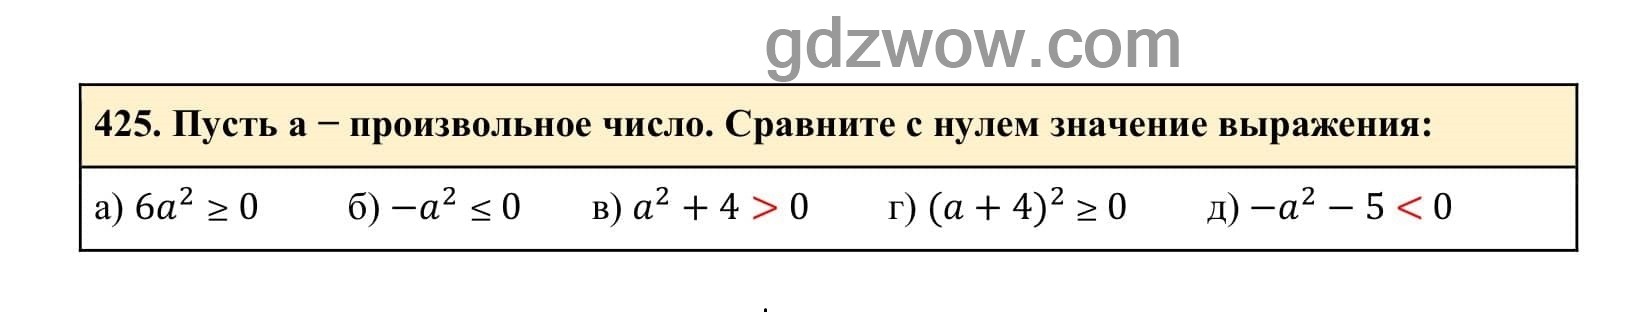 Упражнение 425 - ГДЗ по Алгебре 7 класс Учебник Макарычев (решебник) - GDZwow